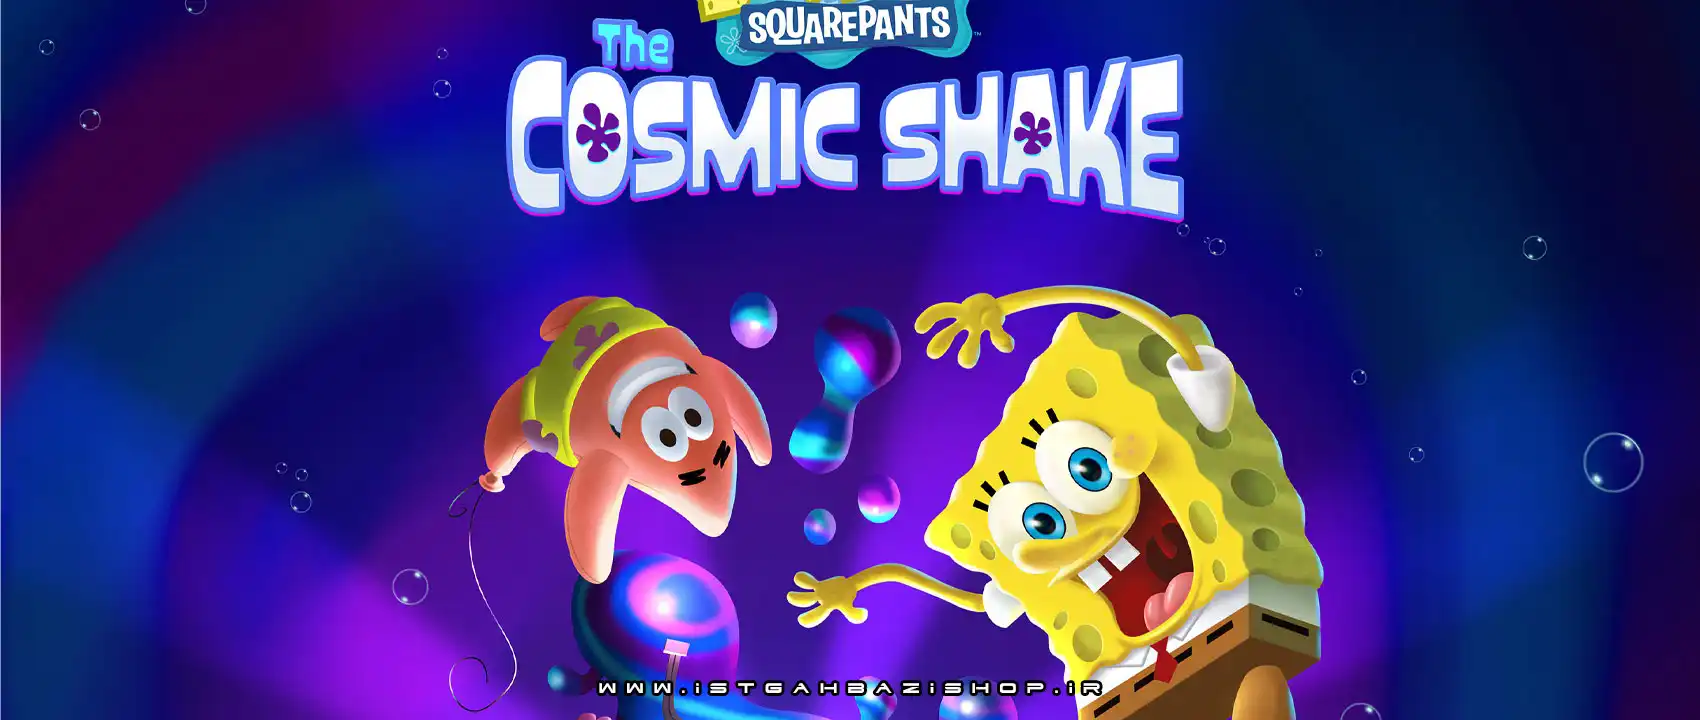 SpongeBob SquarePants The Cosmic Shake Ps5